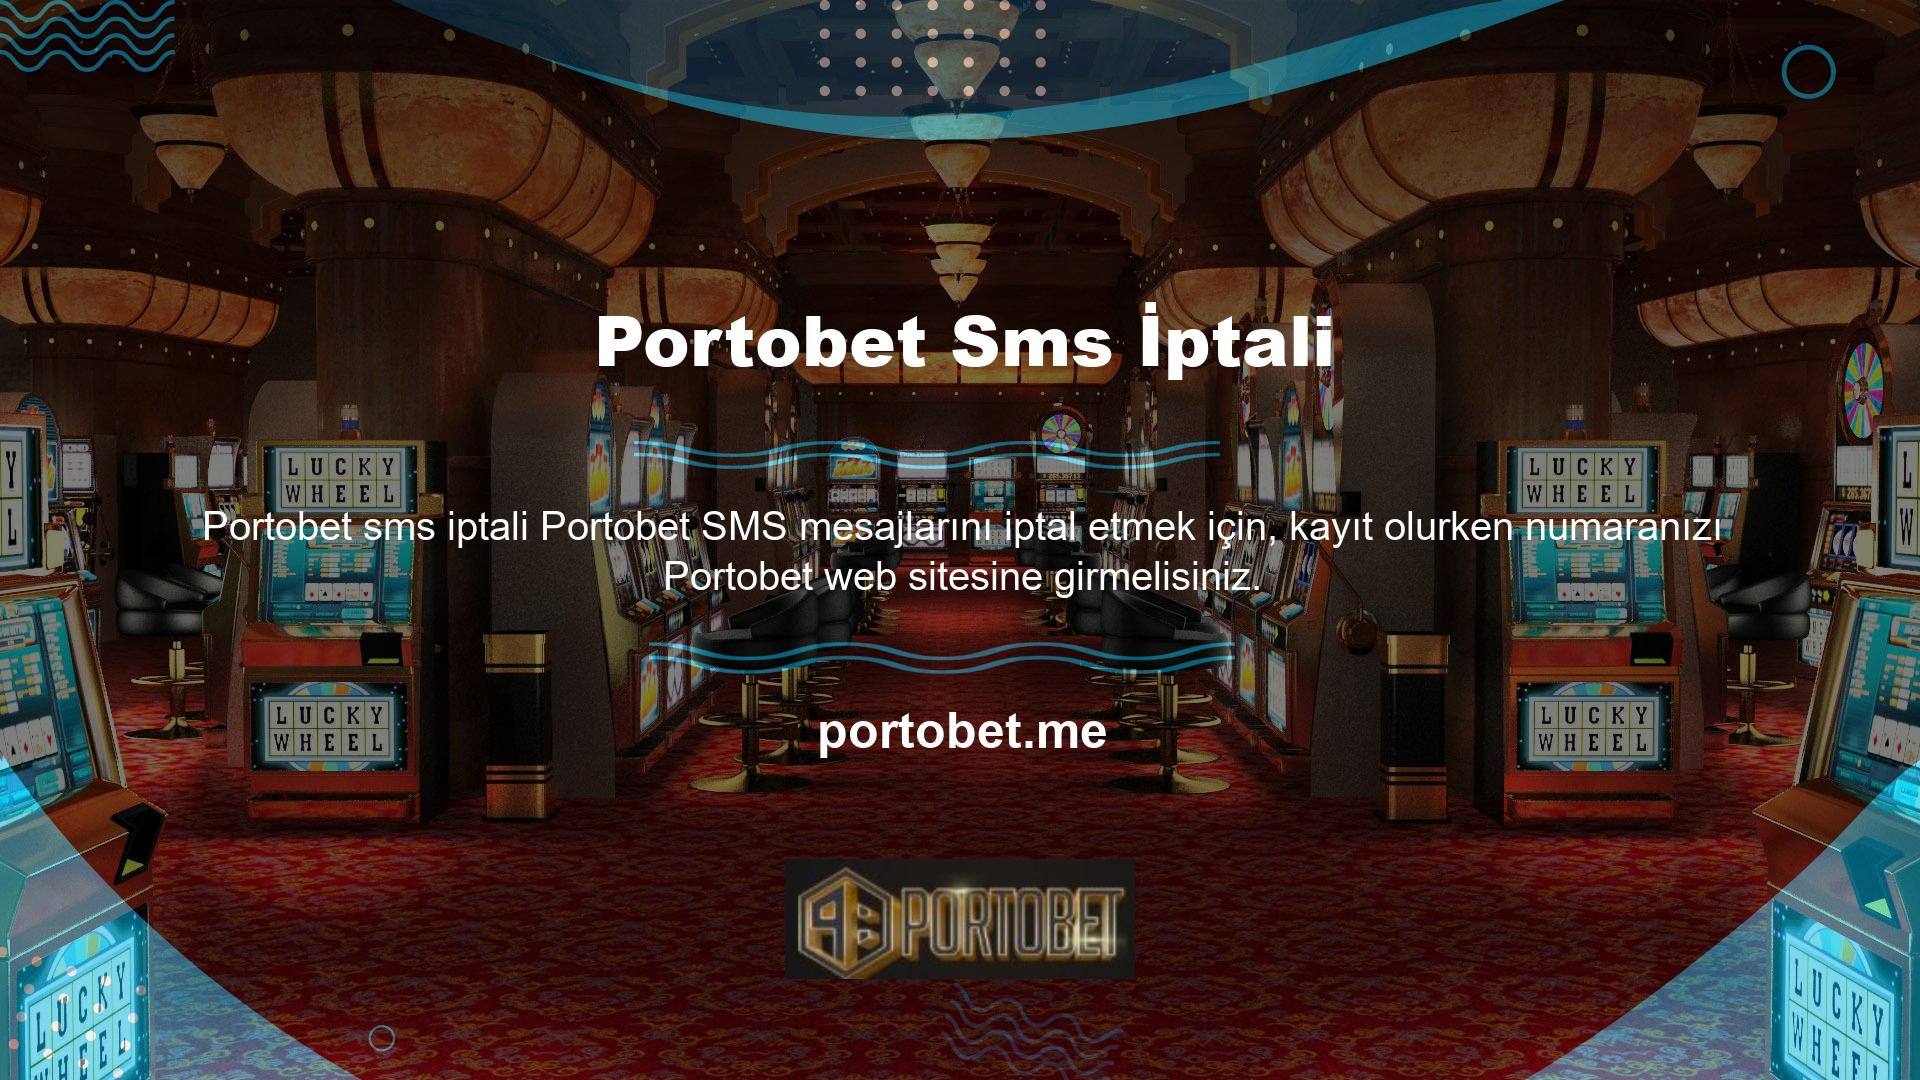 Kayıt bilgileriniz, gönderdikten sonra bir onay SMS' inde kimliğinizi doğrulayan ve Portobet kayıt sürecini tamamlayan onay mesajıyla birlikte görüntülenecektir